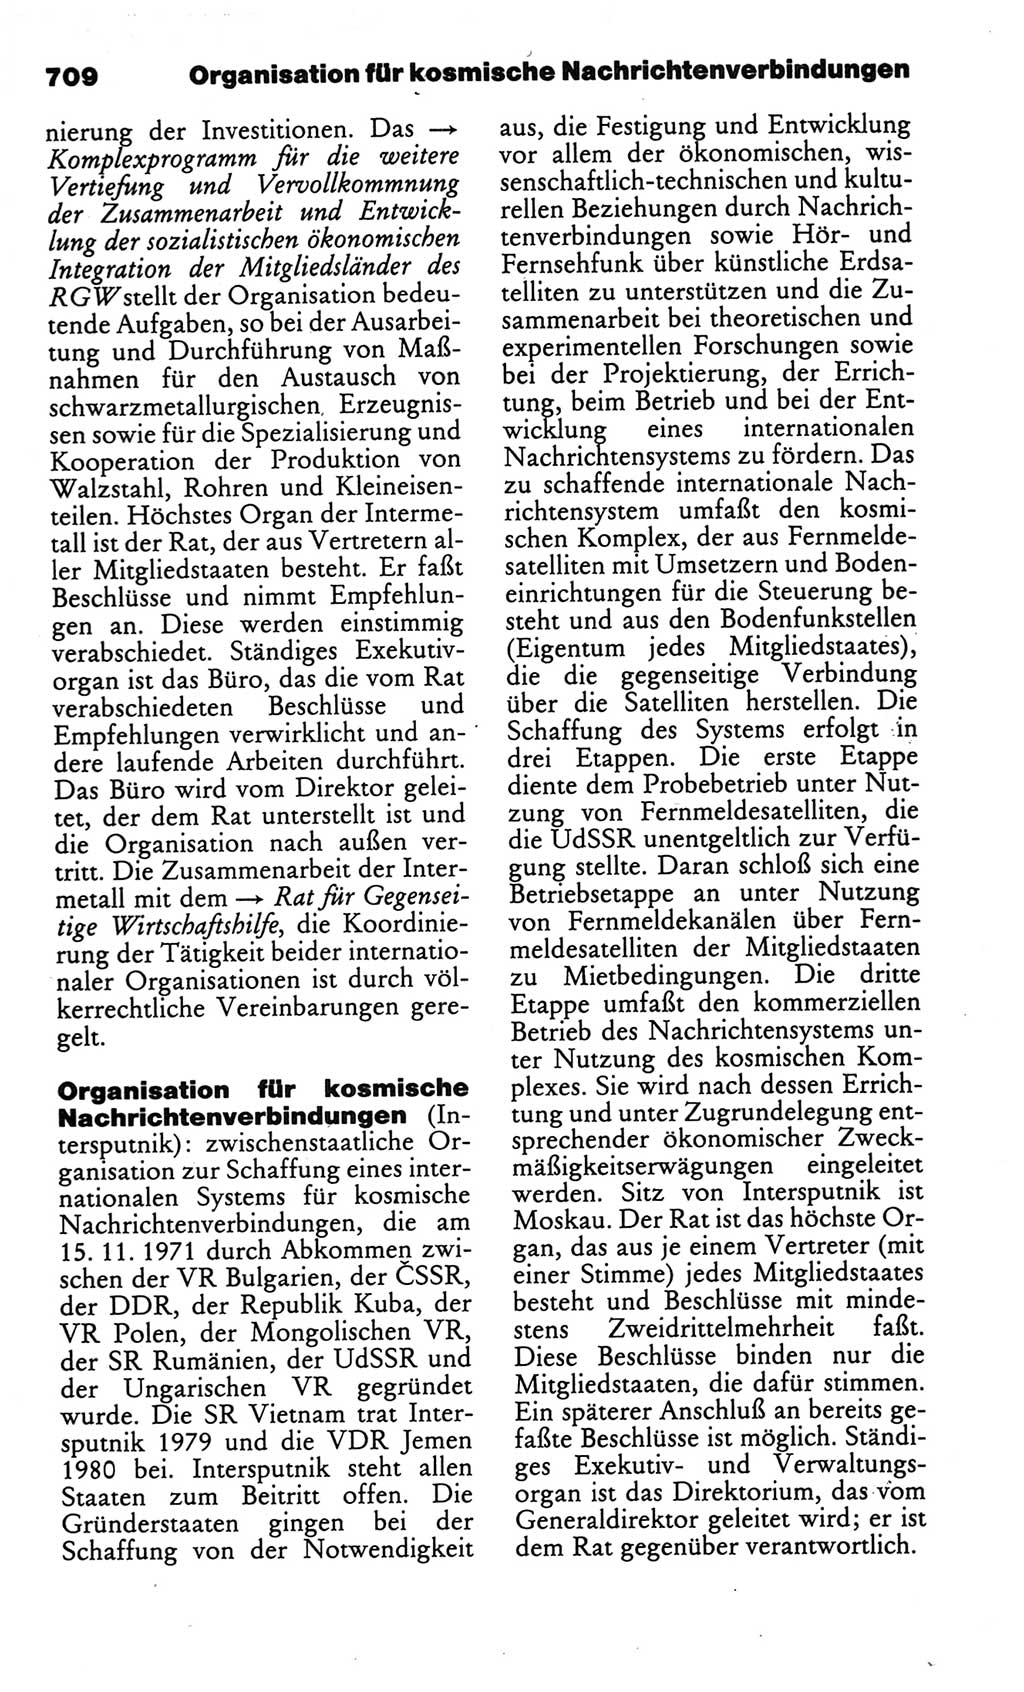 Kleines politisches Wörterbuch [Deutsche Demokratische Republik (DDR)] 1986, Seite 709 (Kl. pol. Wb. DDR 1986, S. 709)